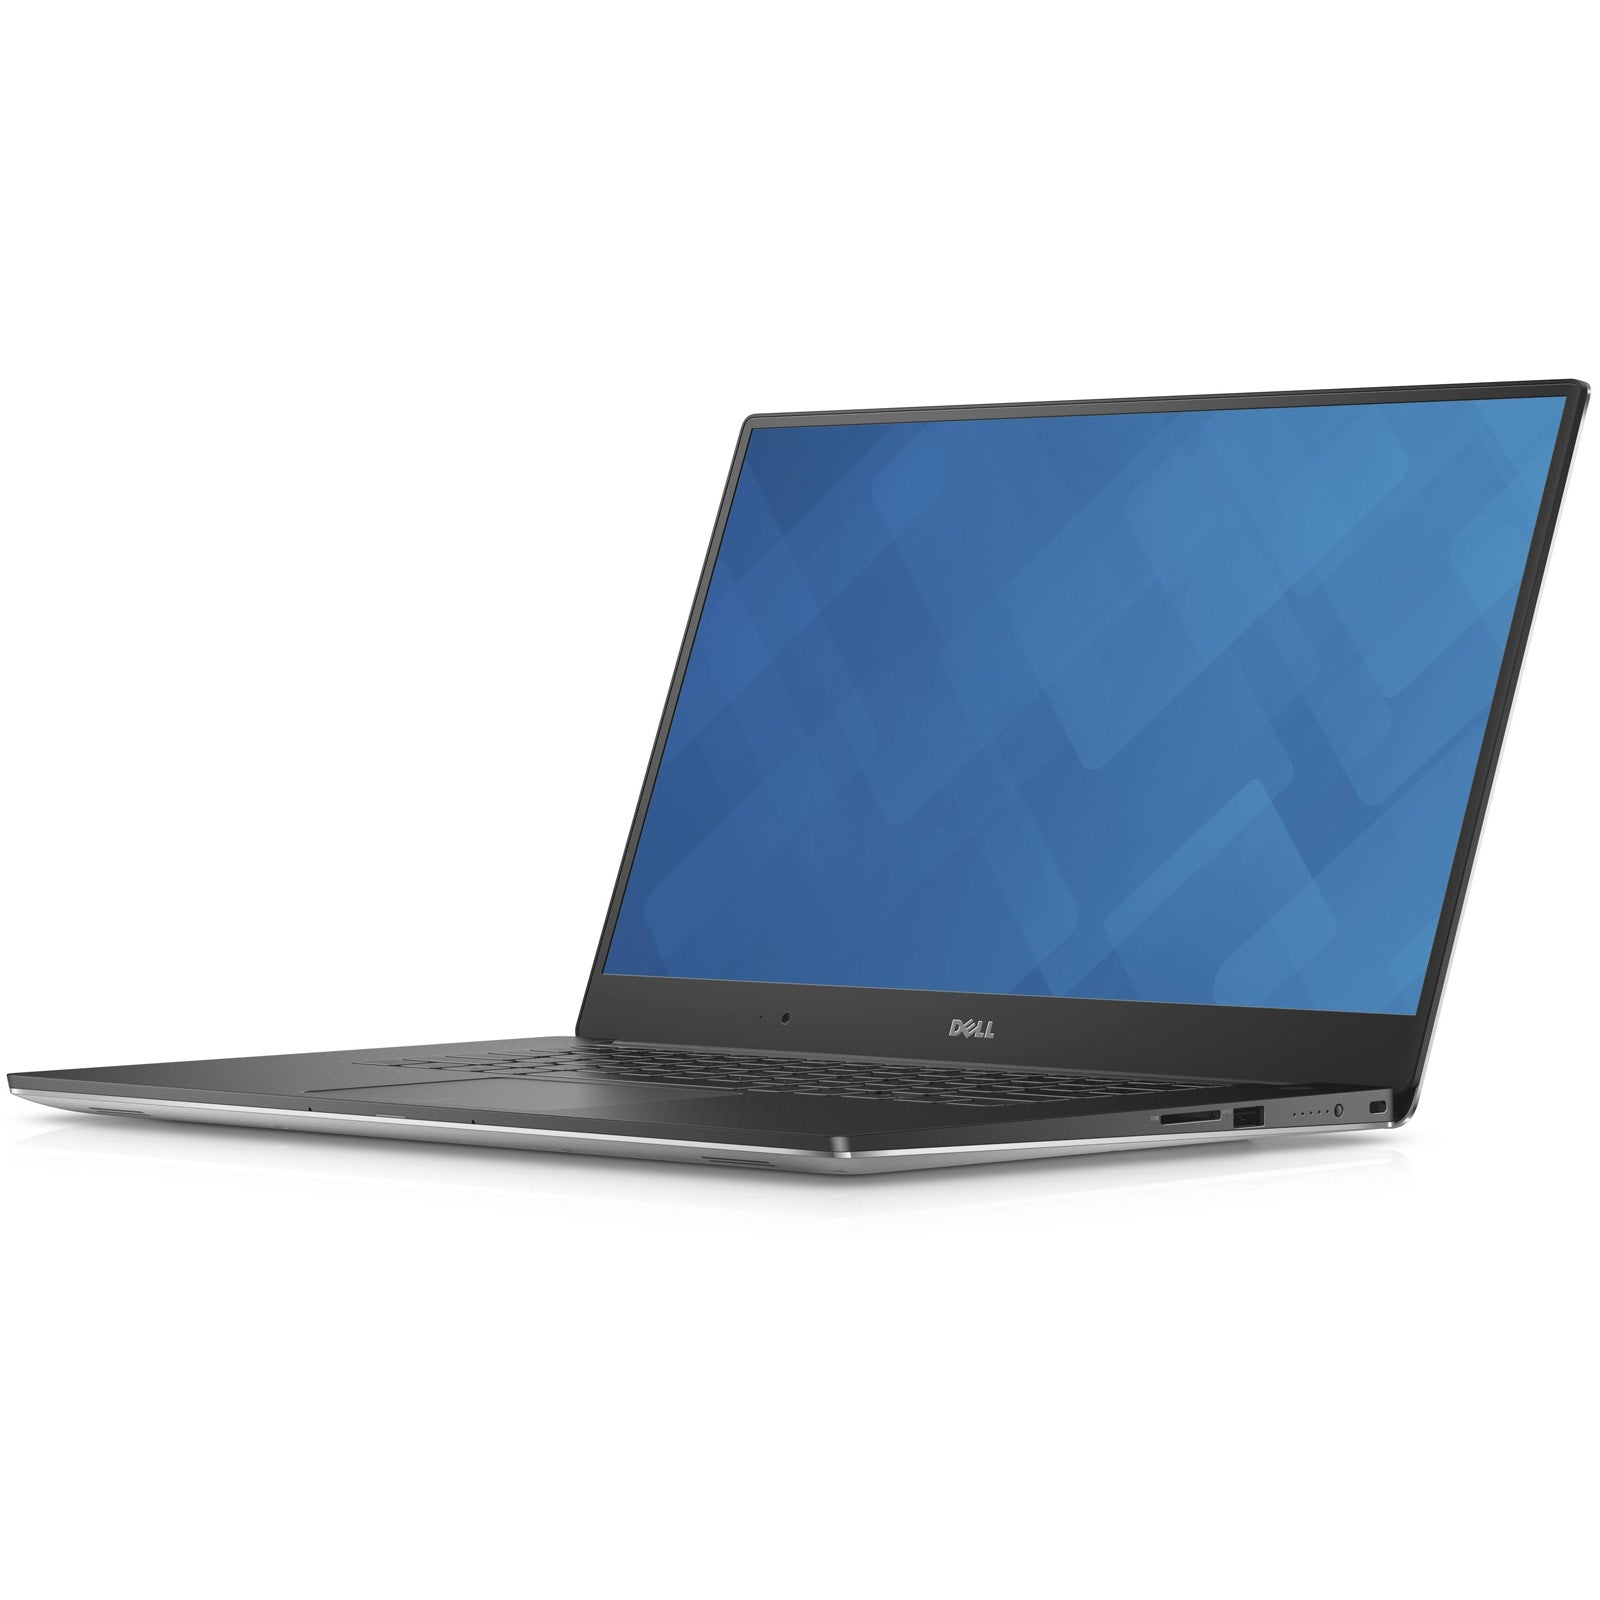 Dell Precision 5510 15.6" Laptop: Core i7-6820HQ, 512GB SSD, 16GB RAM, Warranty